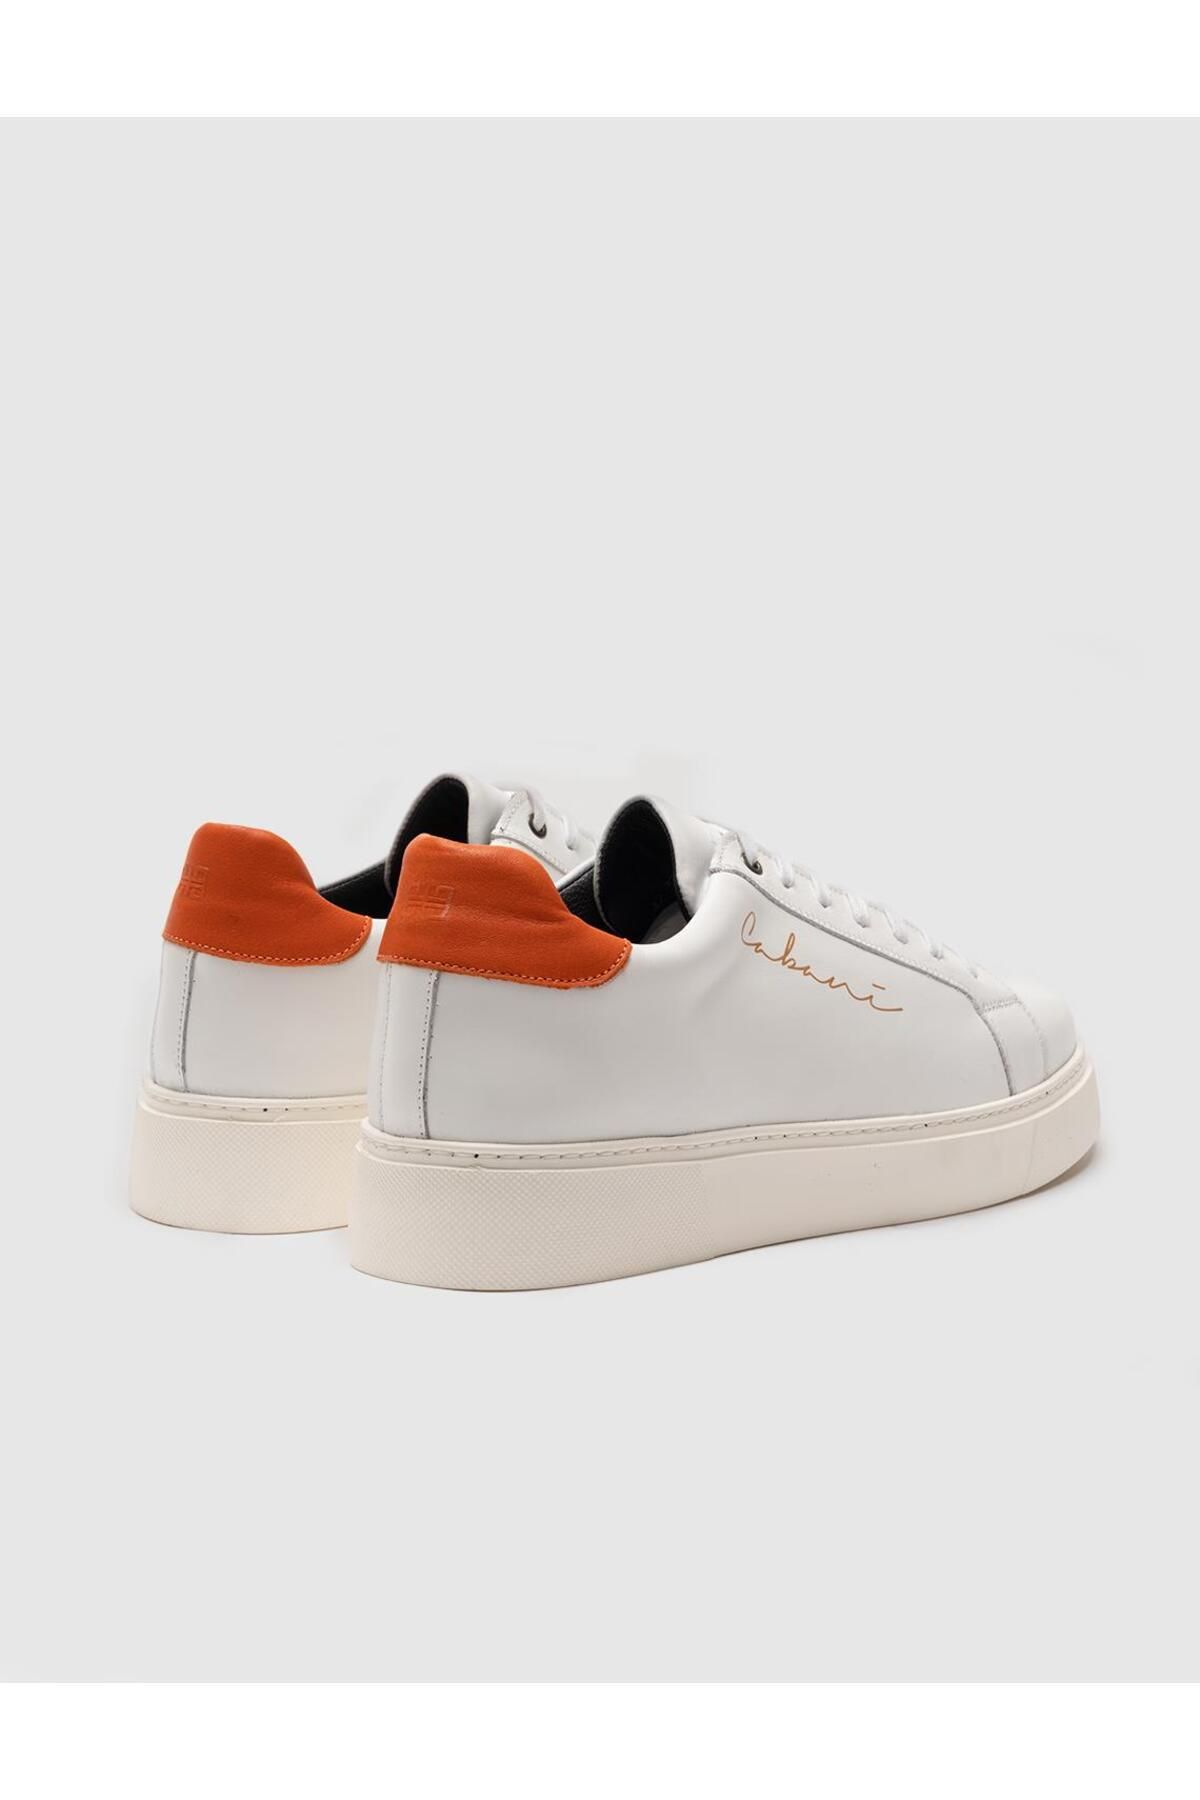 Cabani کفش ورزشی توری سفید-نارنجی چرم واقعی